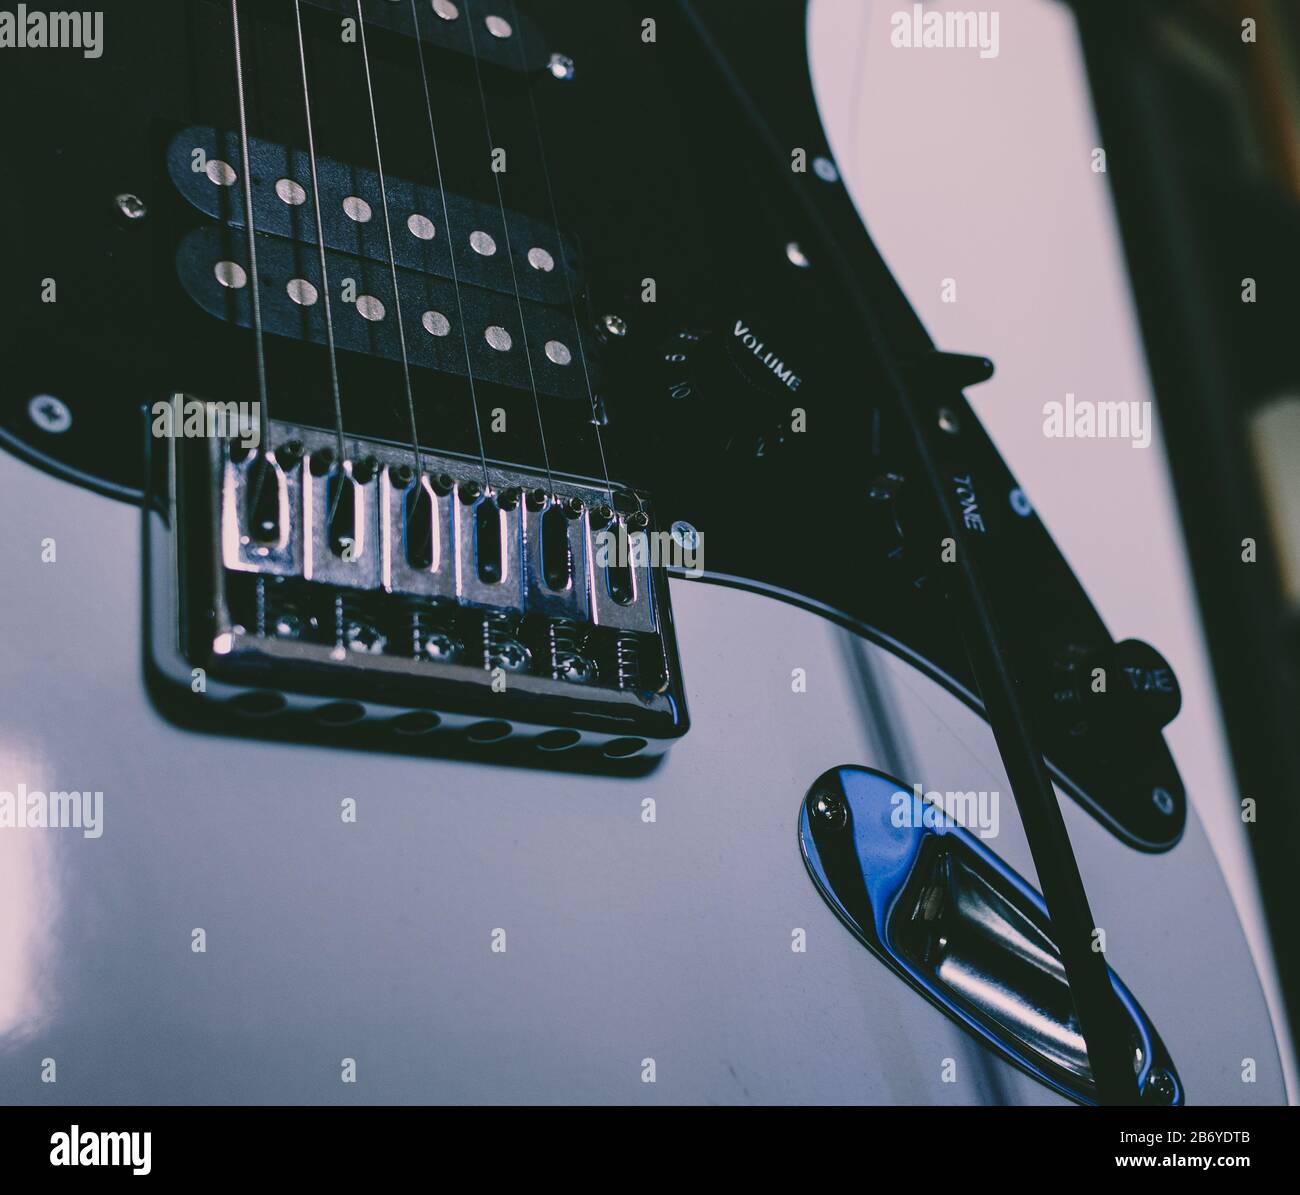 Dunkle Ansicht einer unteren Hälfte der E-Gitarre mit Bridge, Tonabnehmern, Saiten und Tasten zur Lautstärkeregelung und Tonregelung Stockfoto